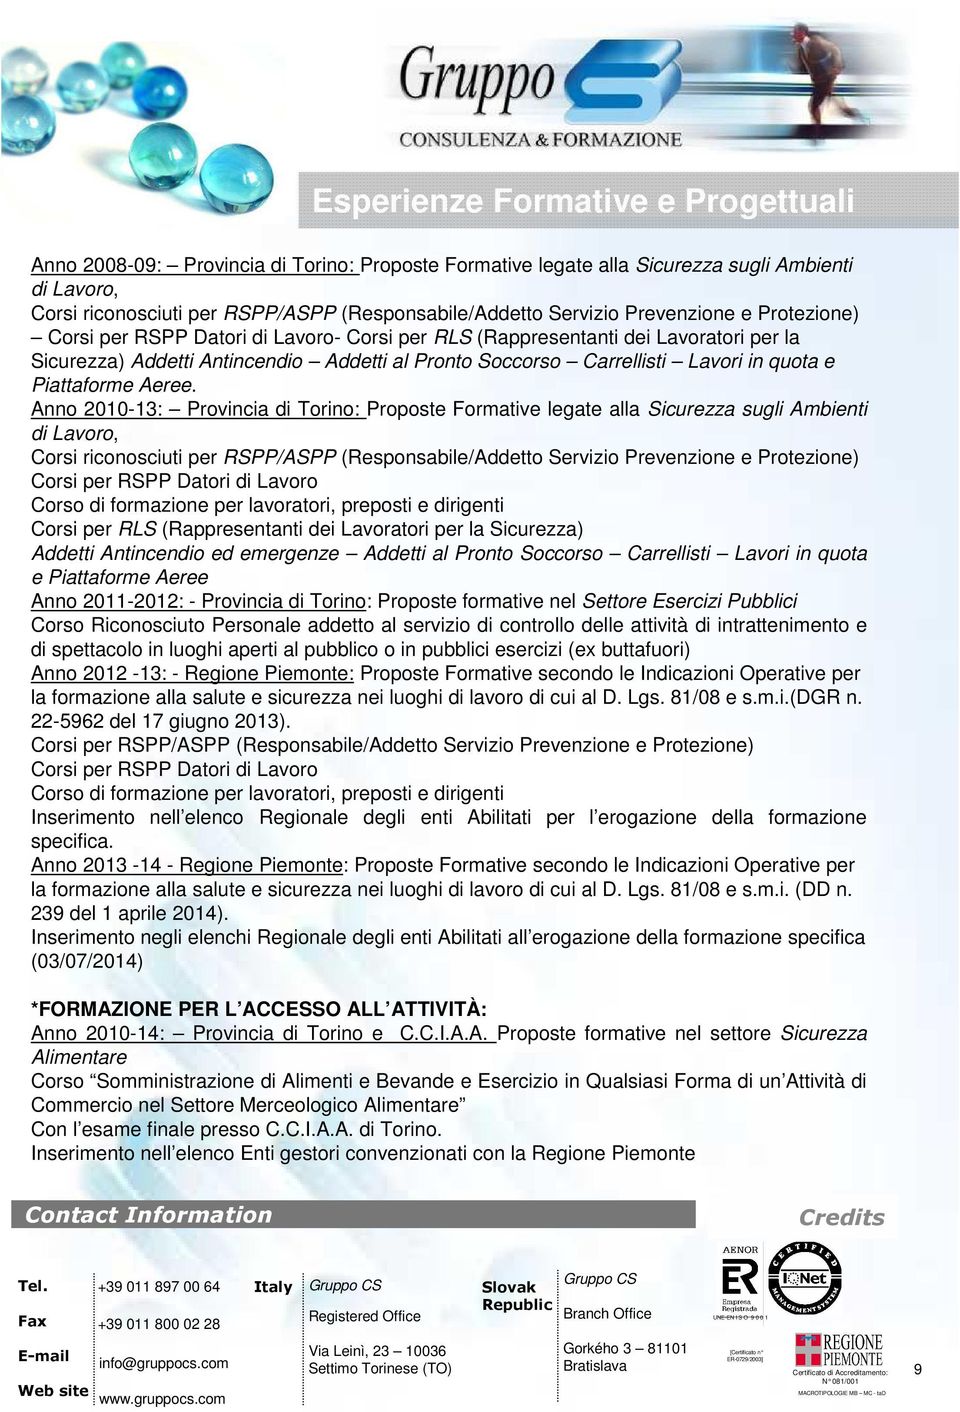 Anno 2010-13: Provincia di Torino: Proposte Formative legate alla Sicurezza sugli Ambienti di Lavoro, Corsi riconosciuti per RSPP/ASPP (Responsabile/Addetto Servizio Prevenzione e Protezione) Corsi